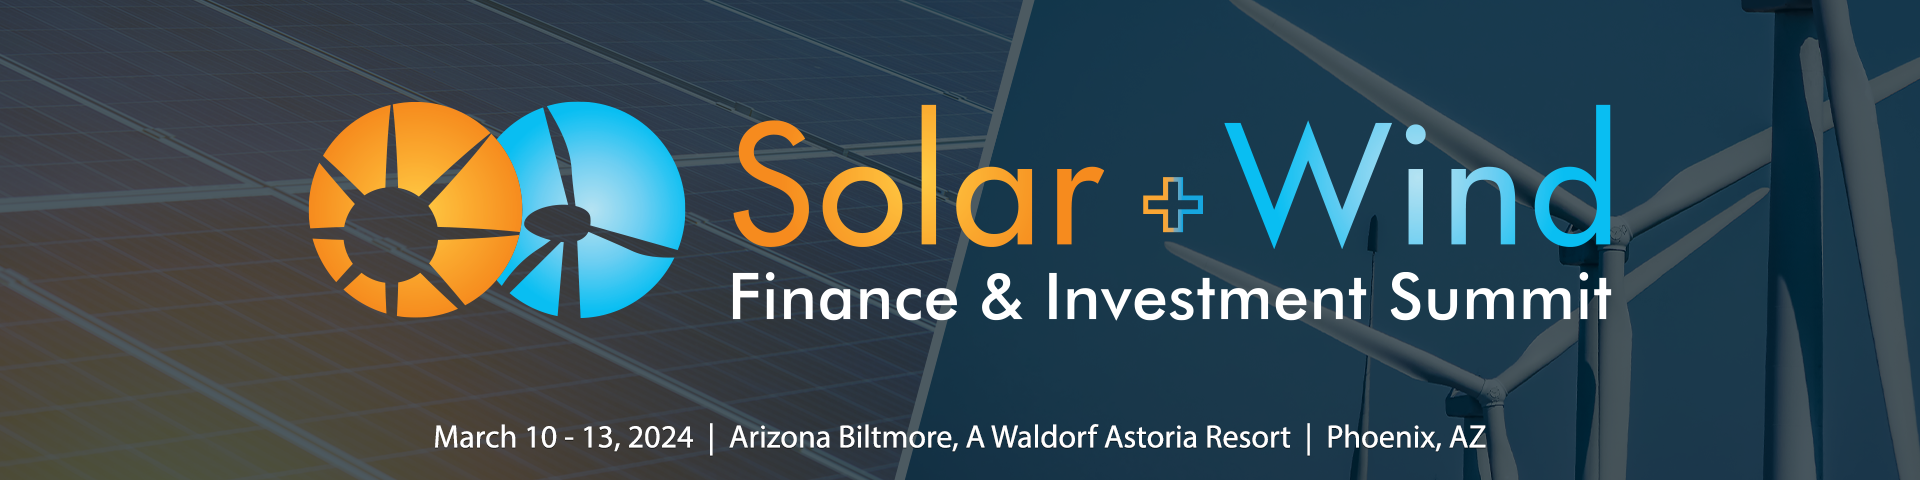 Solar + Wind Finance & Investment Summit 2024